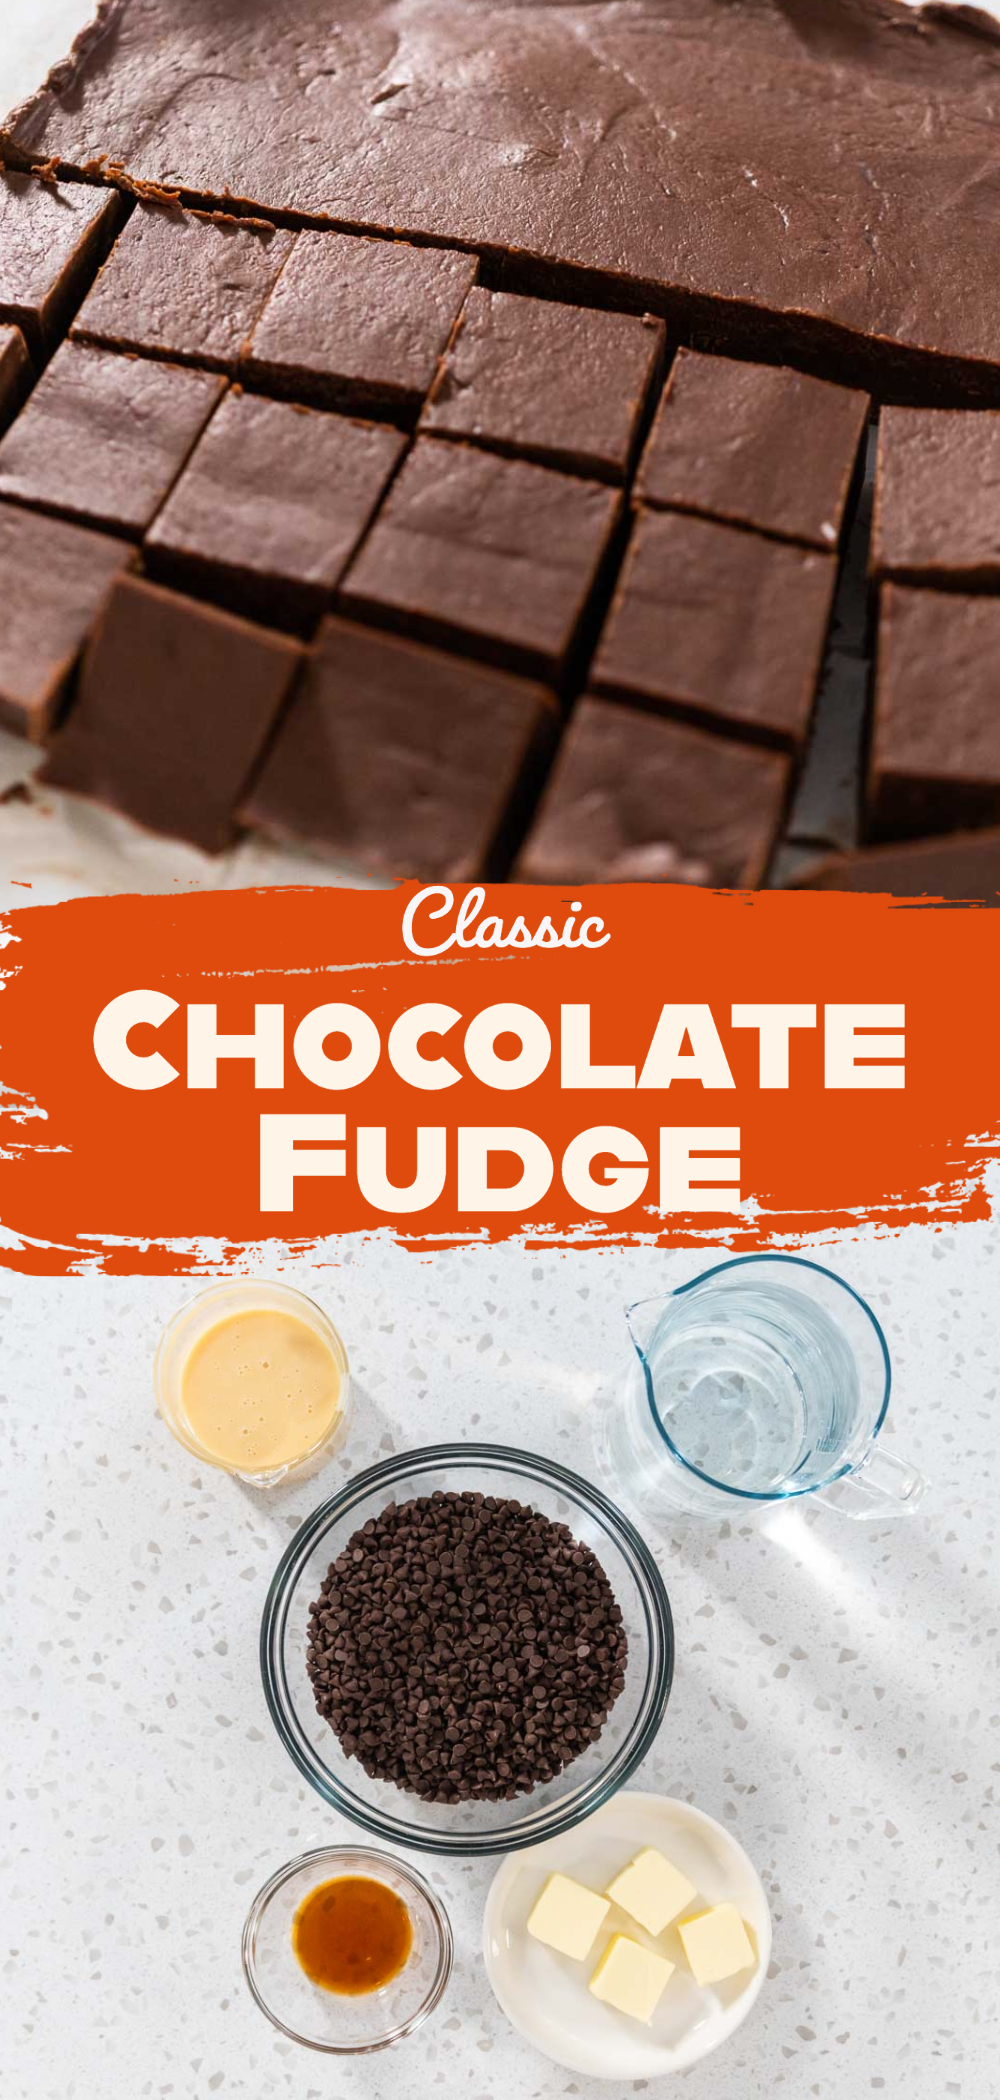 Classic Chocolate Fudge